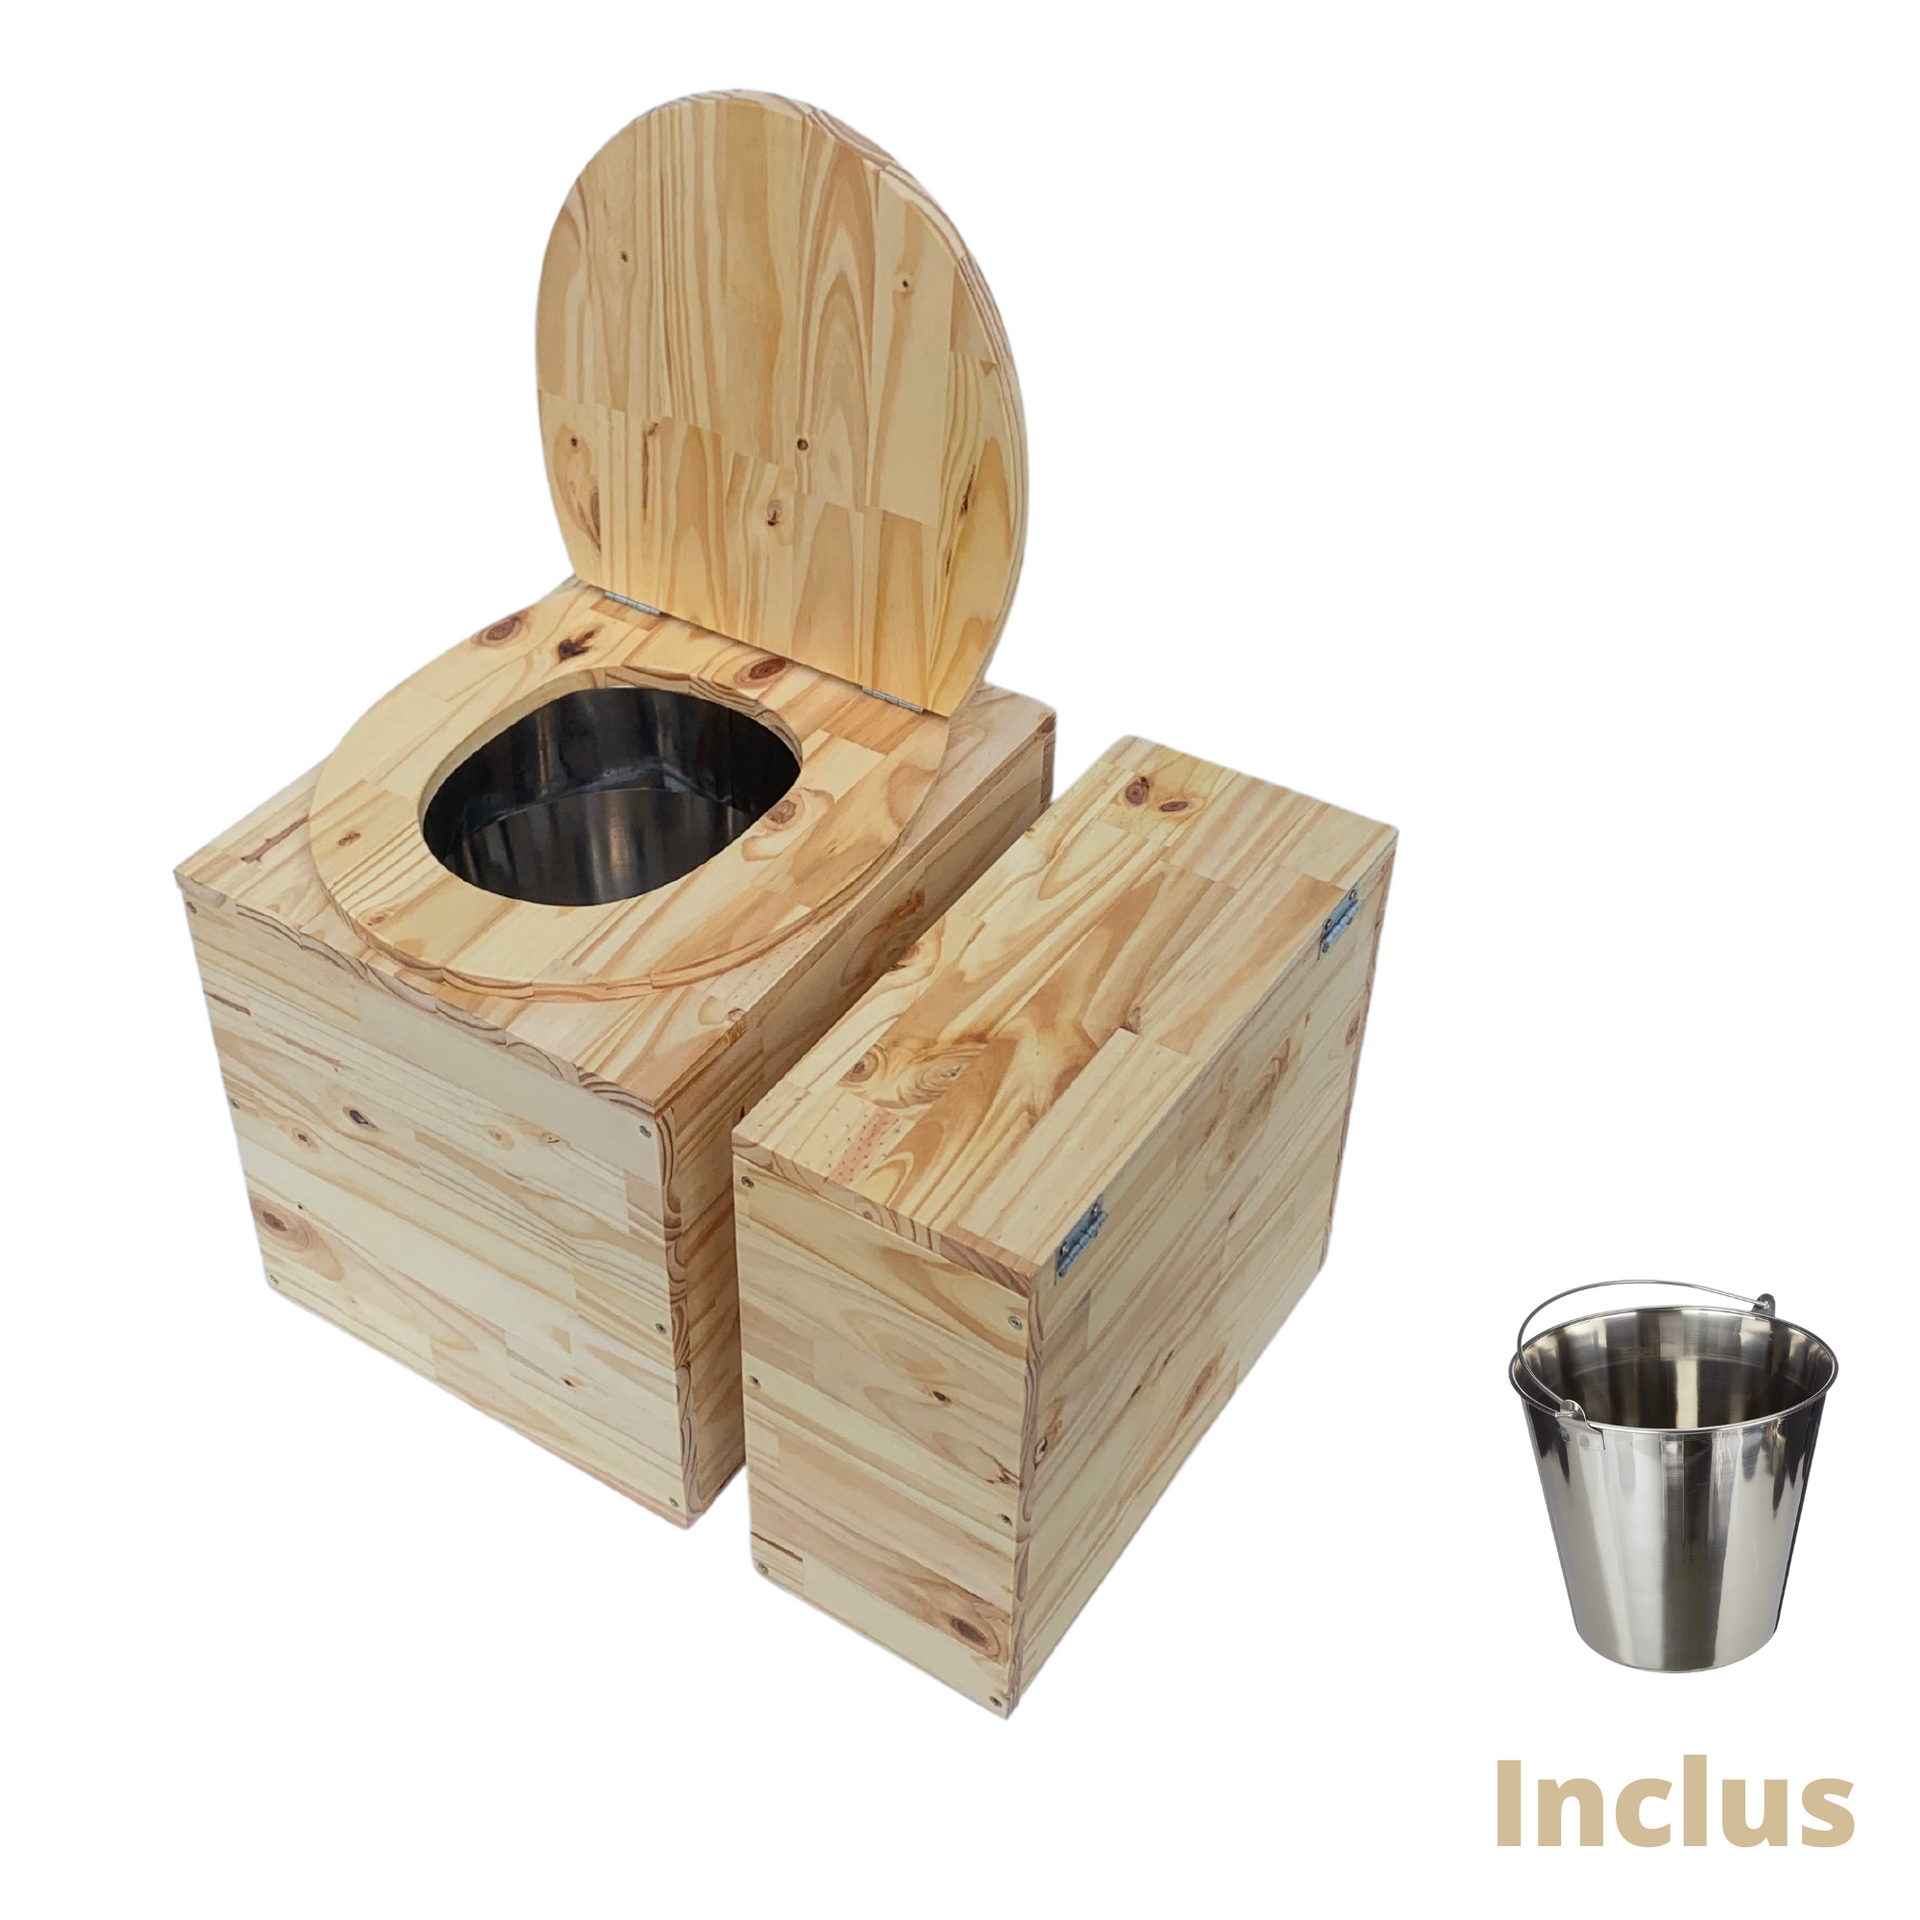 Toilette sèche compacte en bois massif avec compartiment copeaux